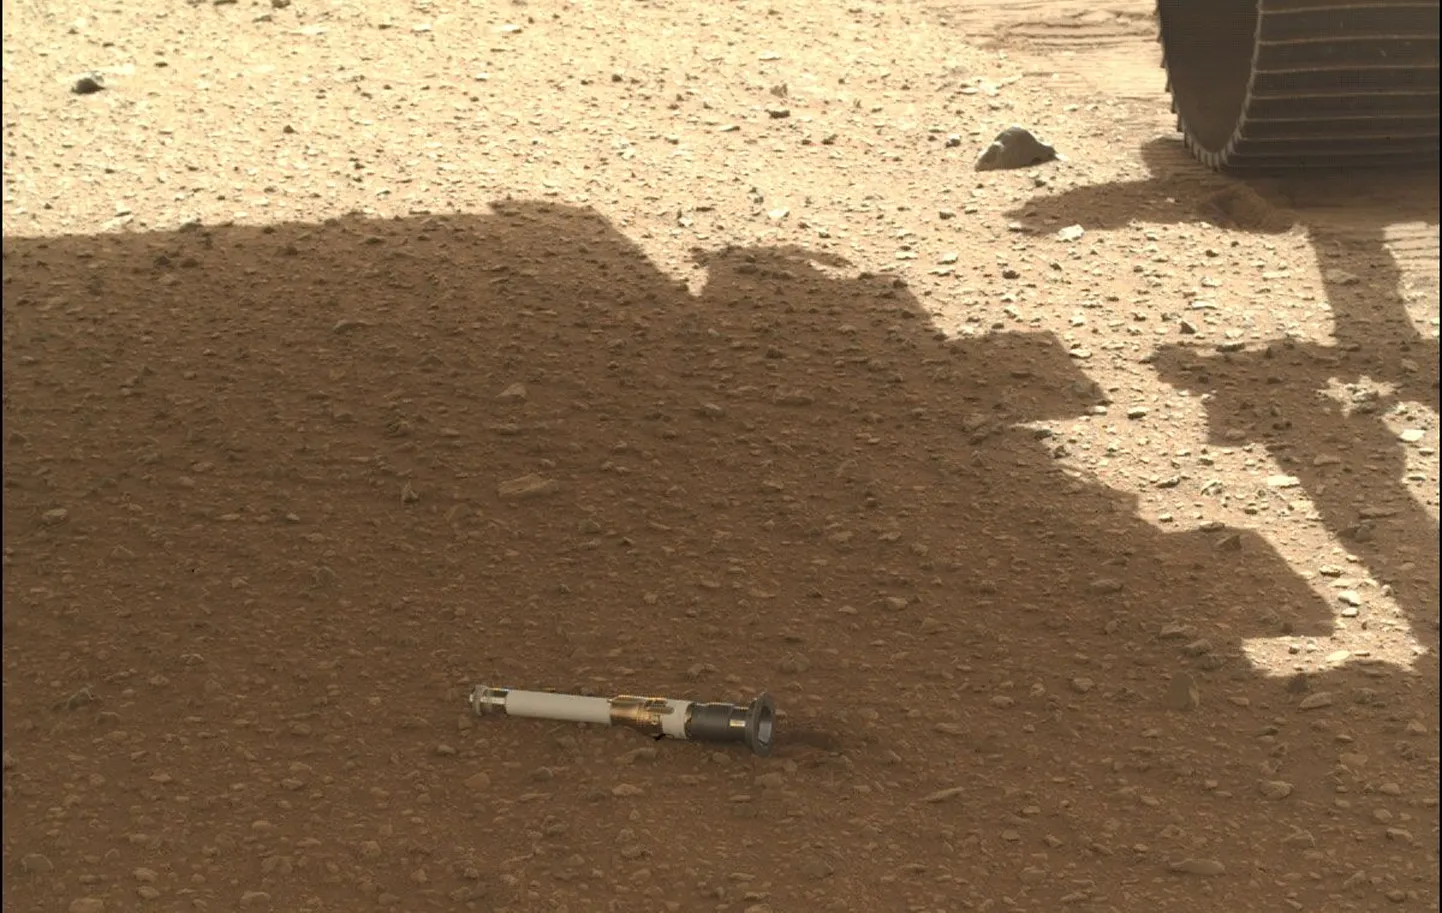 Titaanist kapslis on Marsikulguri Perseveranse võetud pinnasproovid, mida aastate pärast saab Maal uurima hakata, kui kapslile uus kosmosemissioon järele saadetakse.